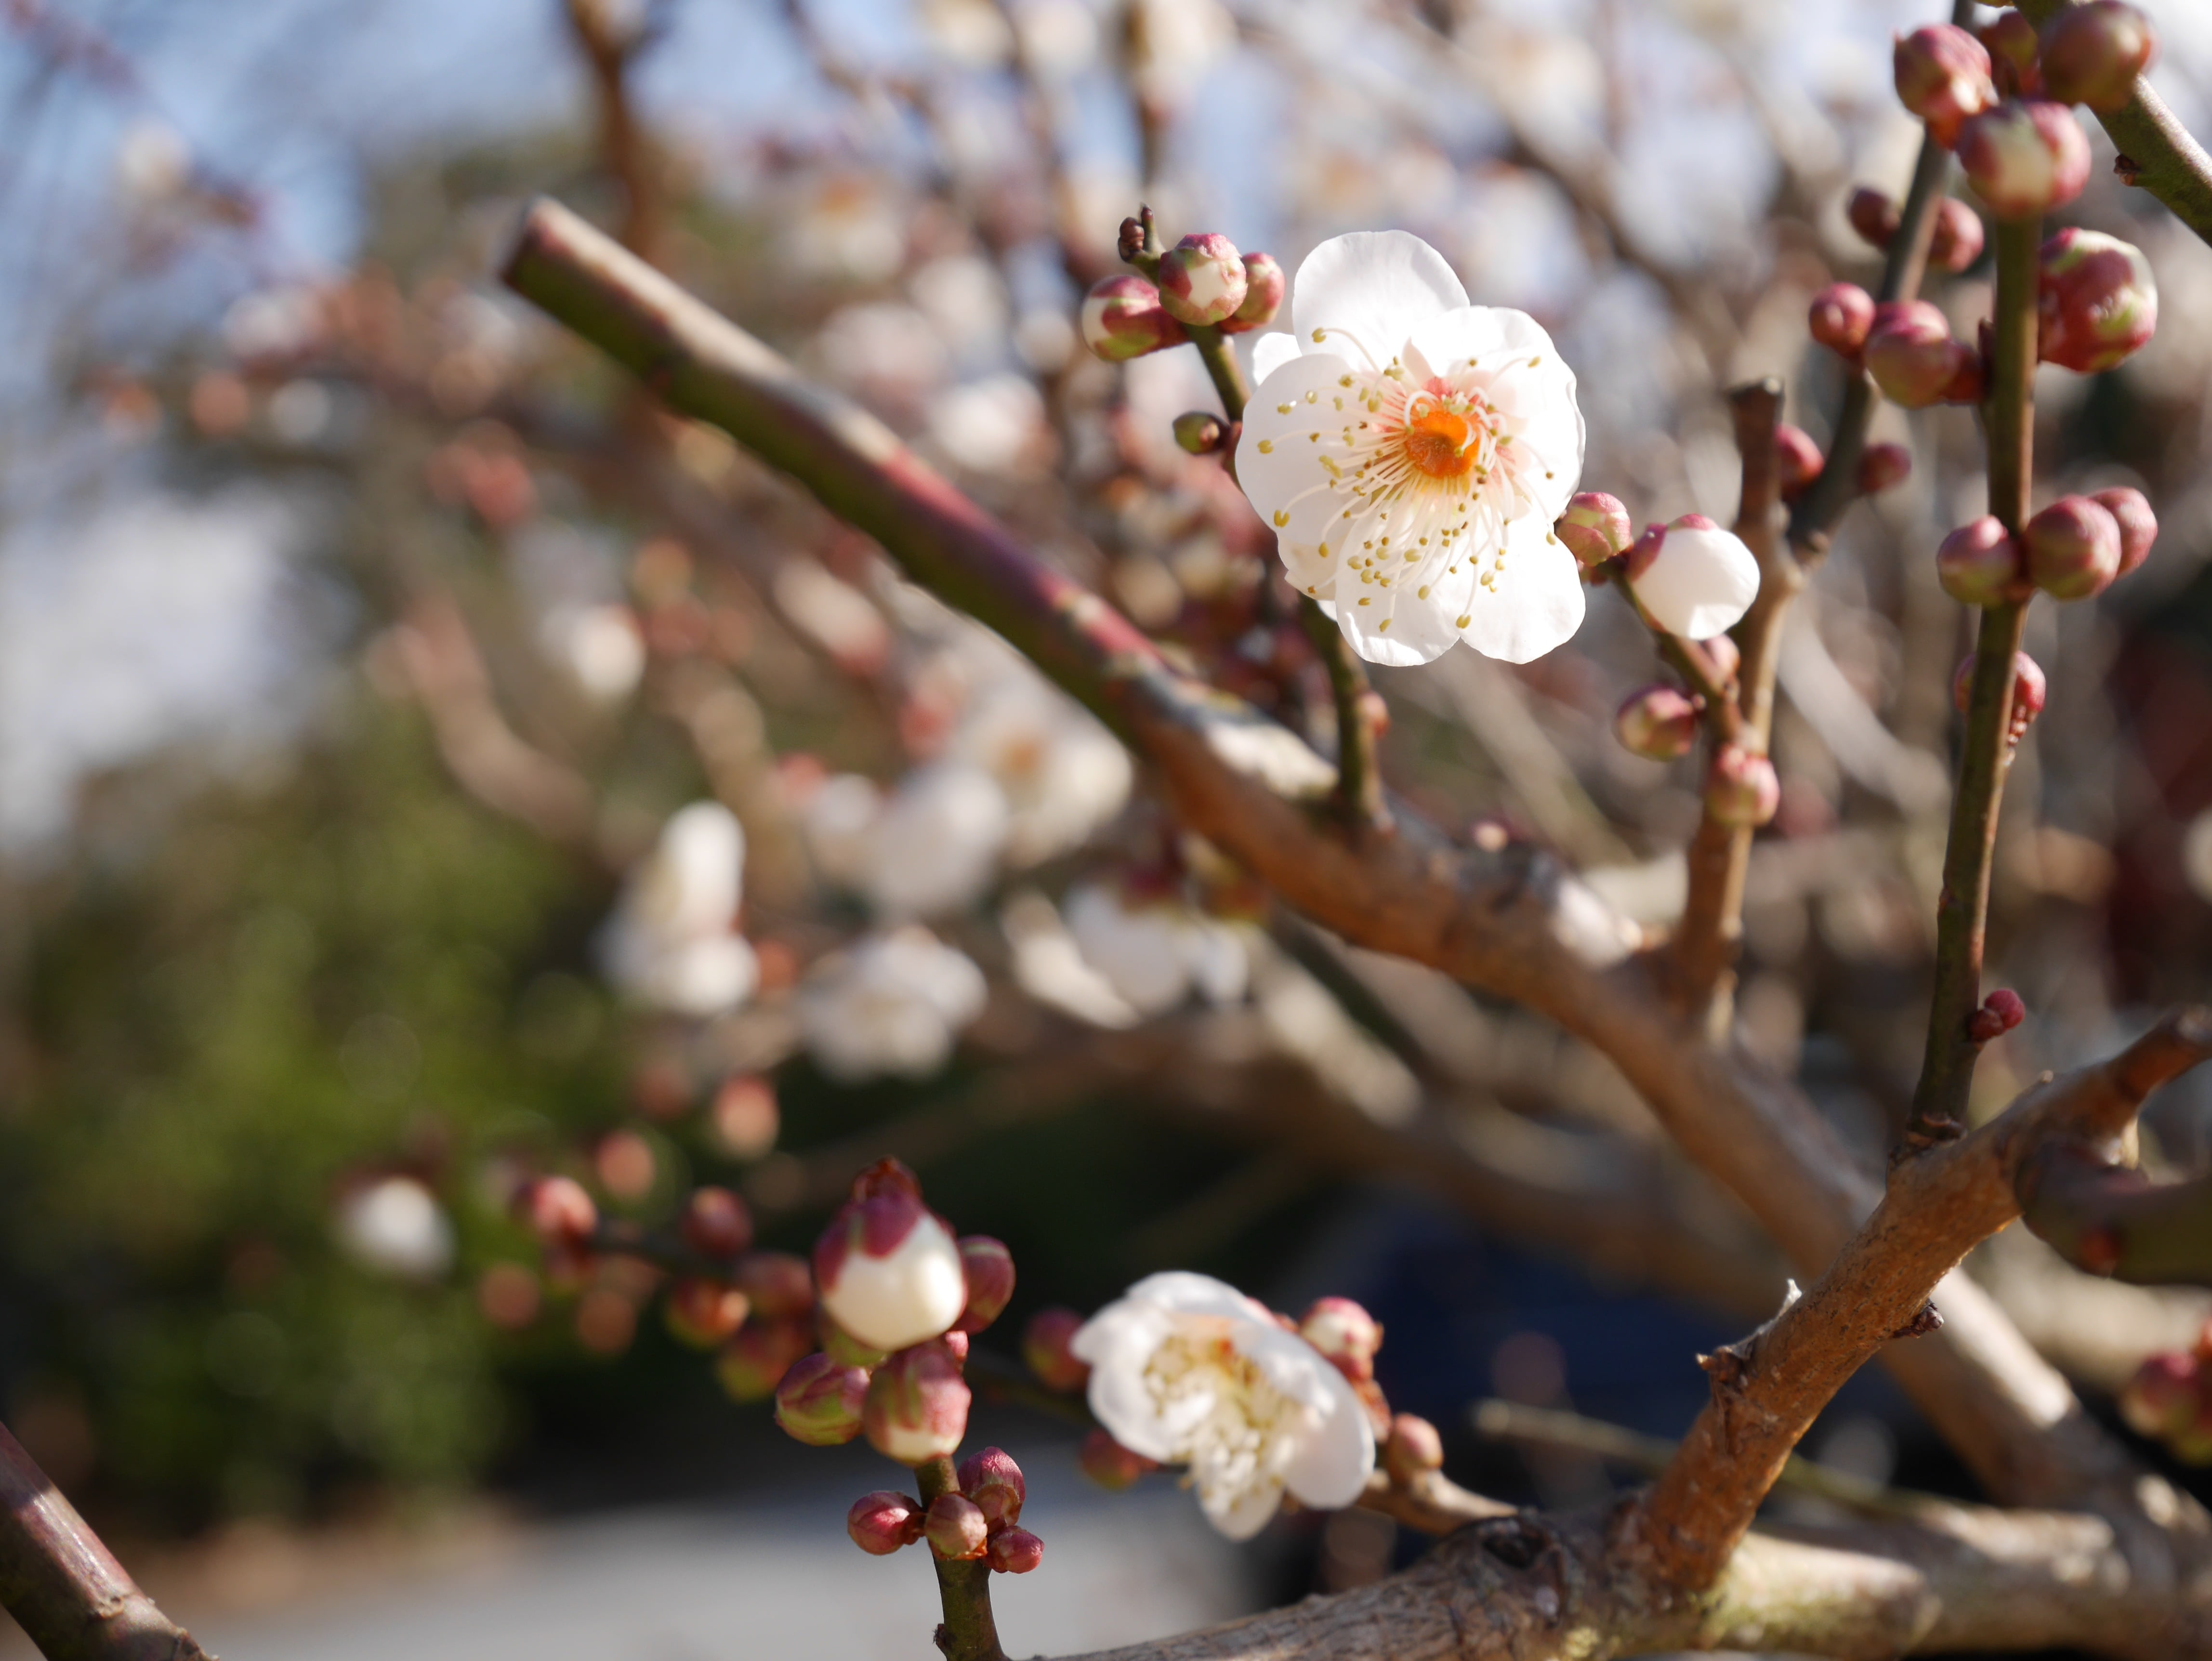 shallow focus of cherry blossom